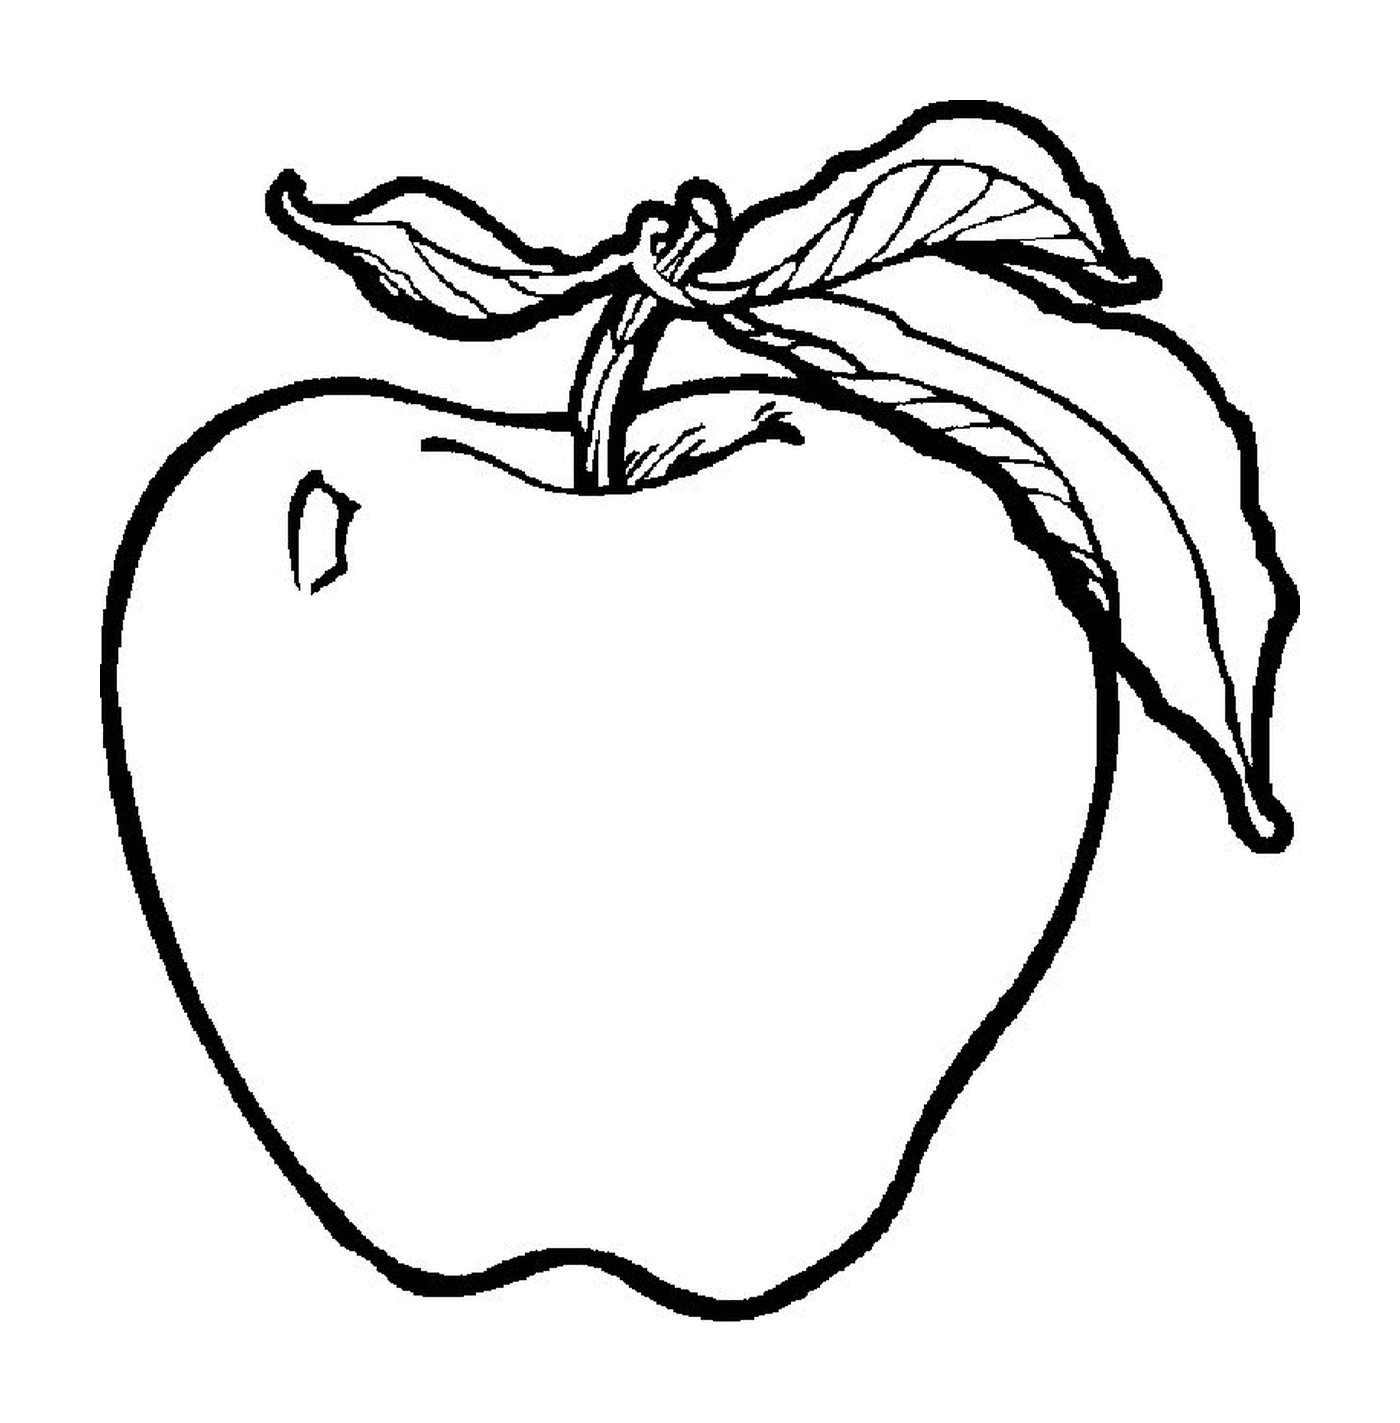  有叶子的细细苹果 